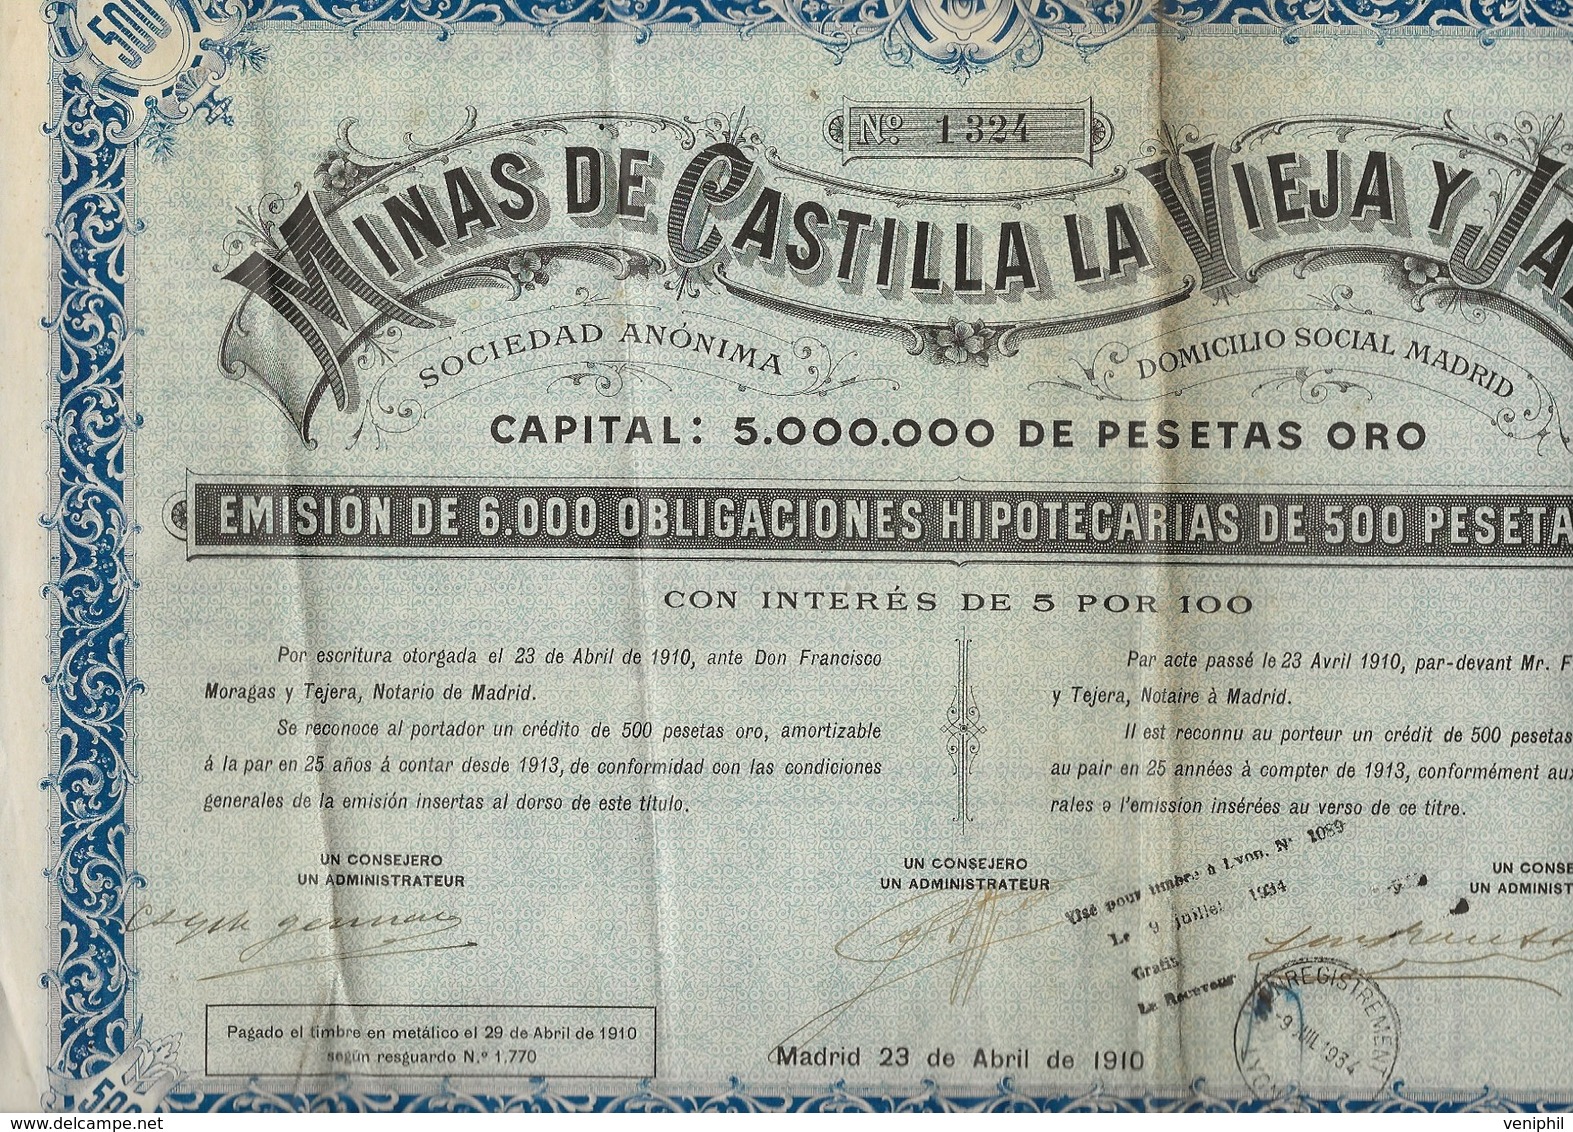 MINES DECASTILLA LA VIEJA Y JAEN - 6000 OBLIGATIONS DE 500 PESETAS OR -ANNEE 1910 - Mines